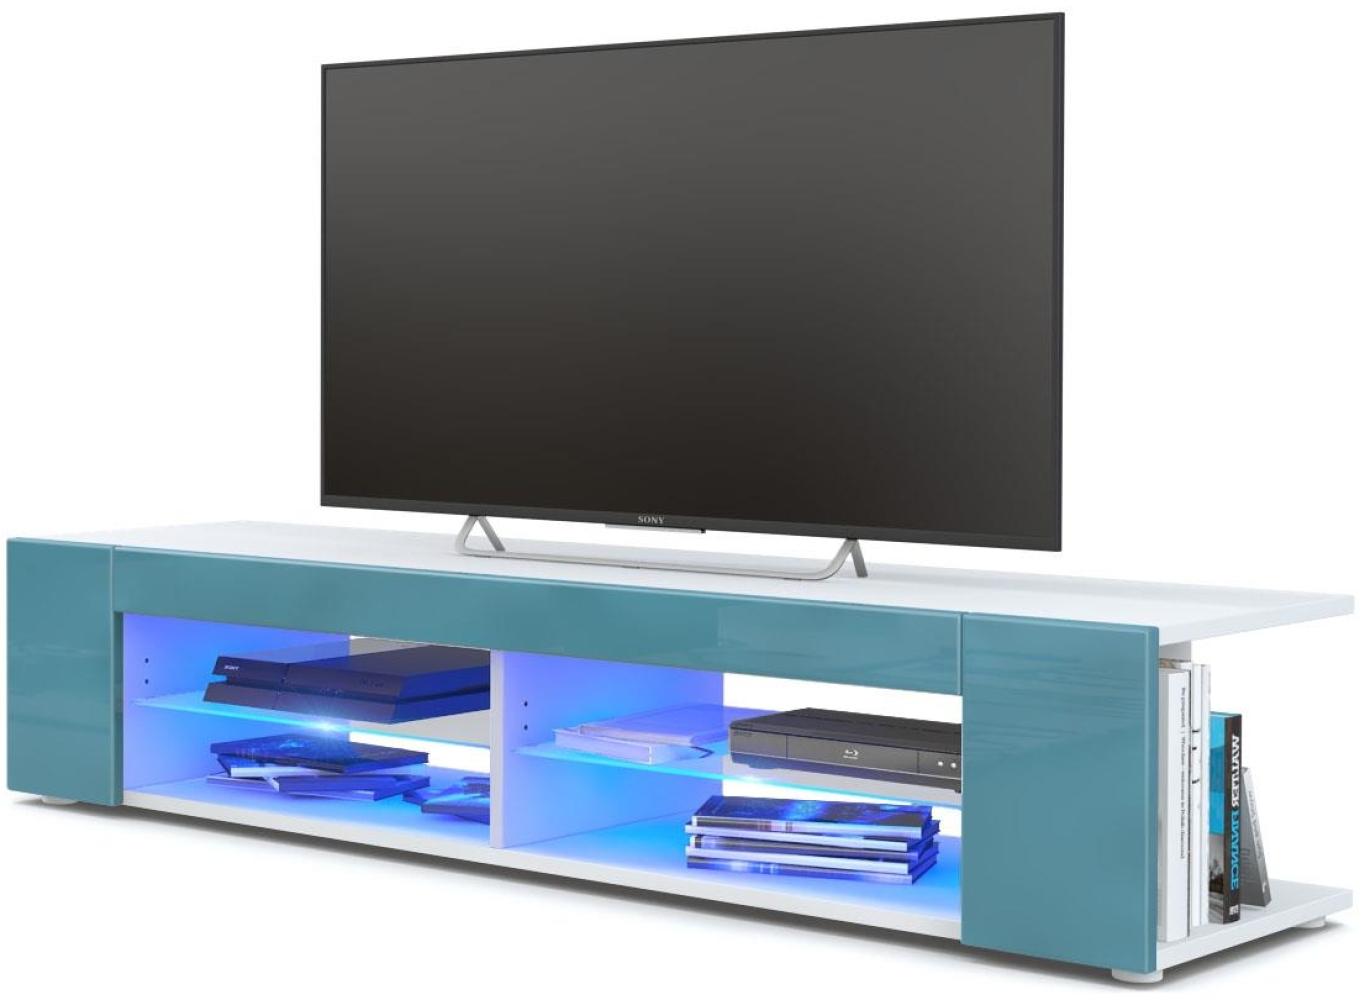 Vladon Lowboard Movie, TV-Kommode mit 4 offenen Fächern und Zierleisten, Weiß matt/Petrol Hochglanz, inkl. LED-Beleuchtung blau (134 x 29 x 39 cm) Bild 1